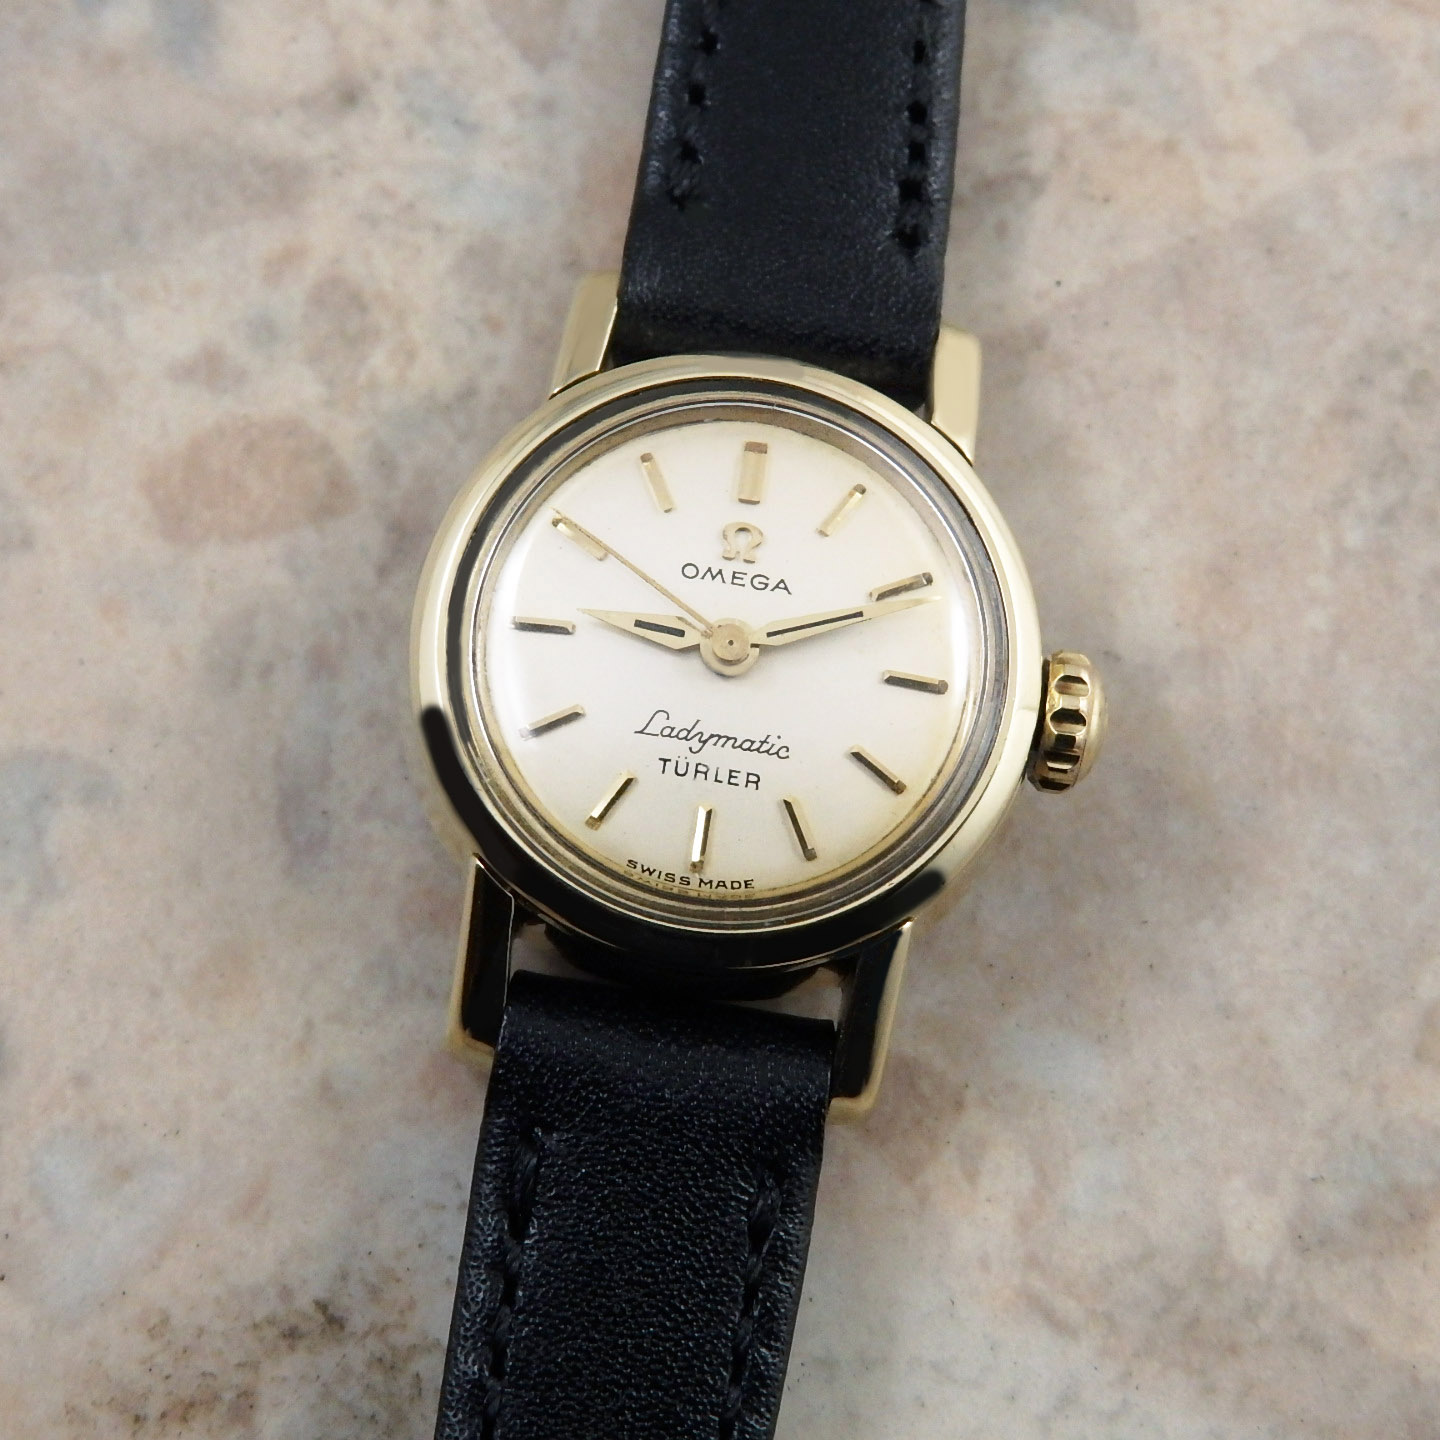 OH済 1956年製 オメガ レディマティック初代モデル Turler Wネーム 腕時計 評判良い